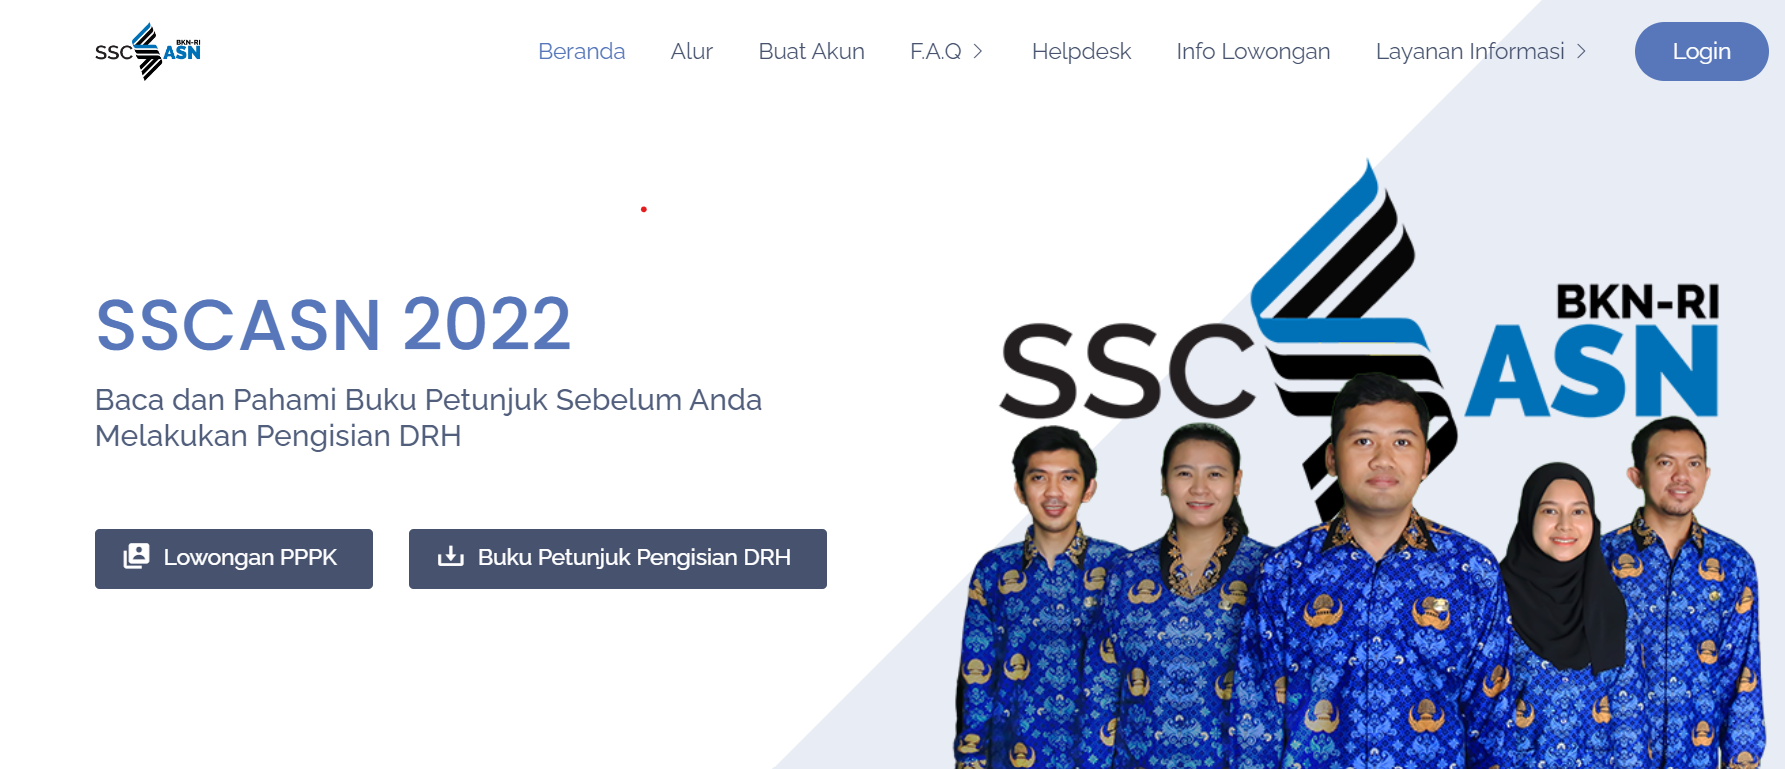 SSCASN 2022